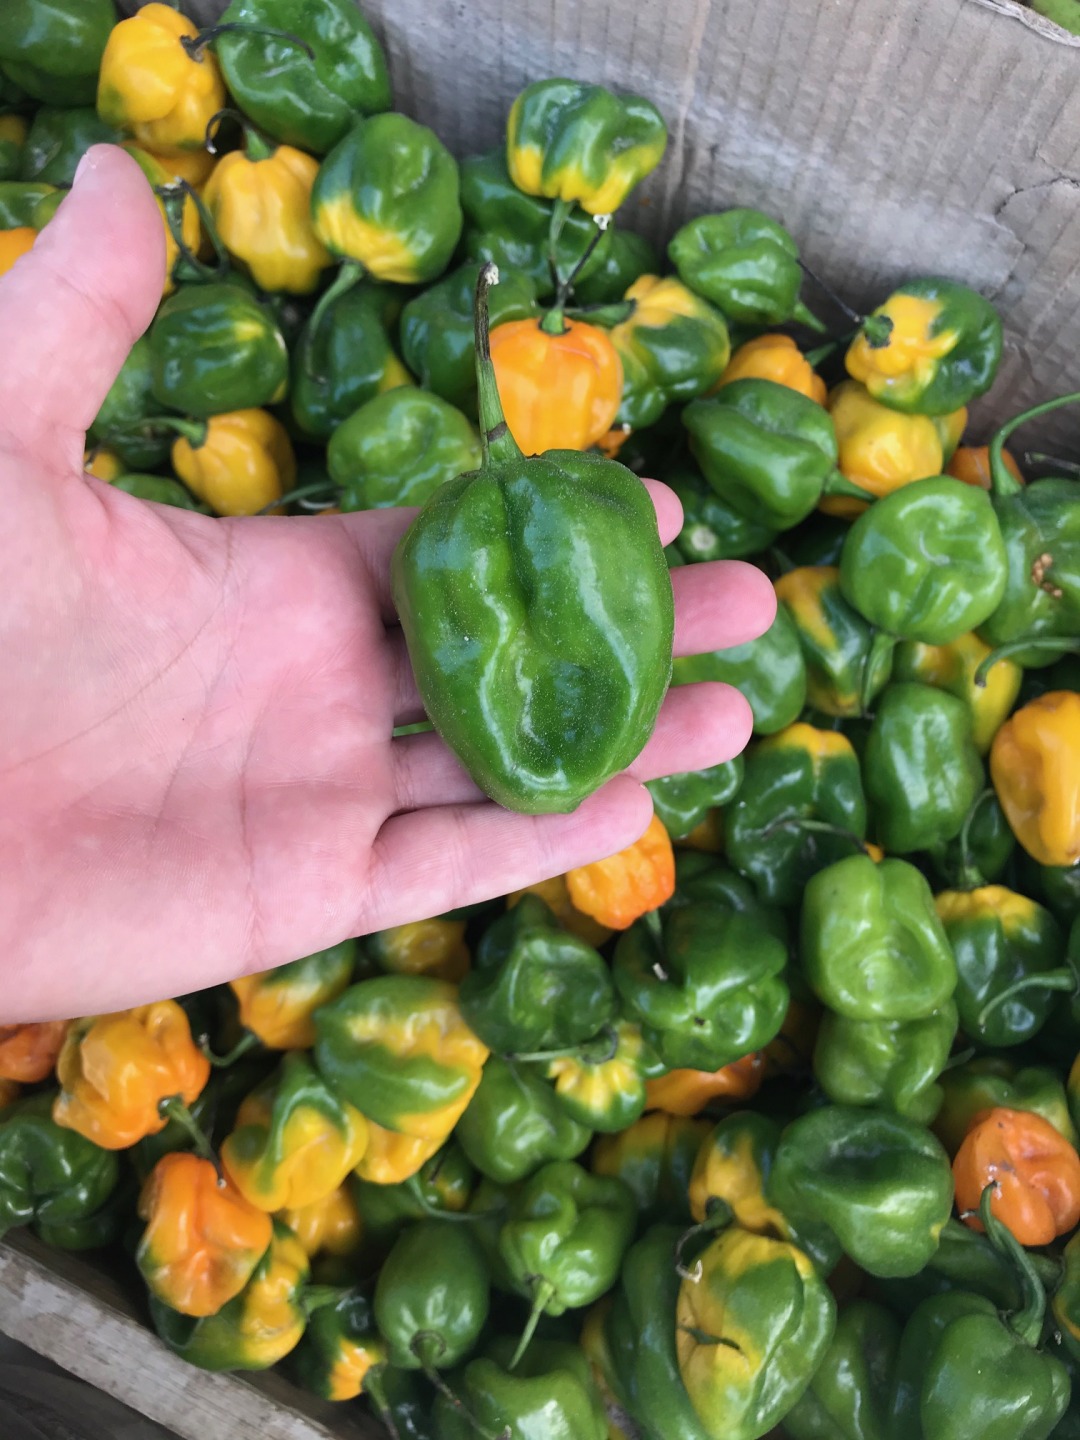 Big Habanero pepper